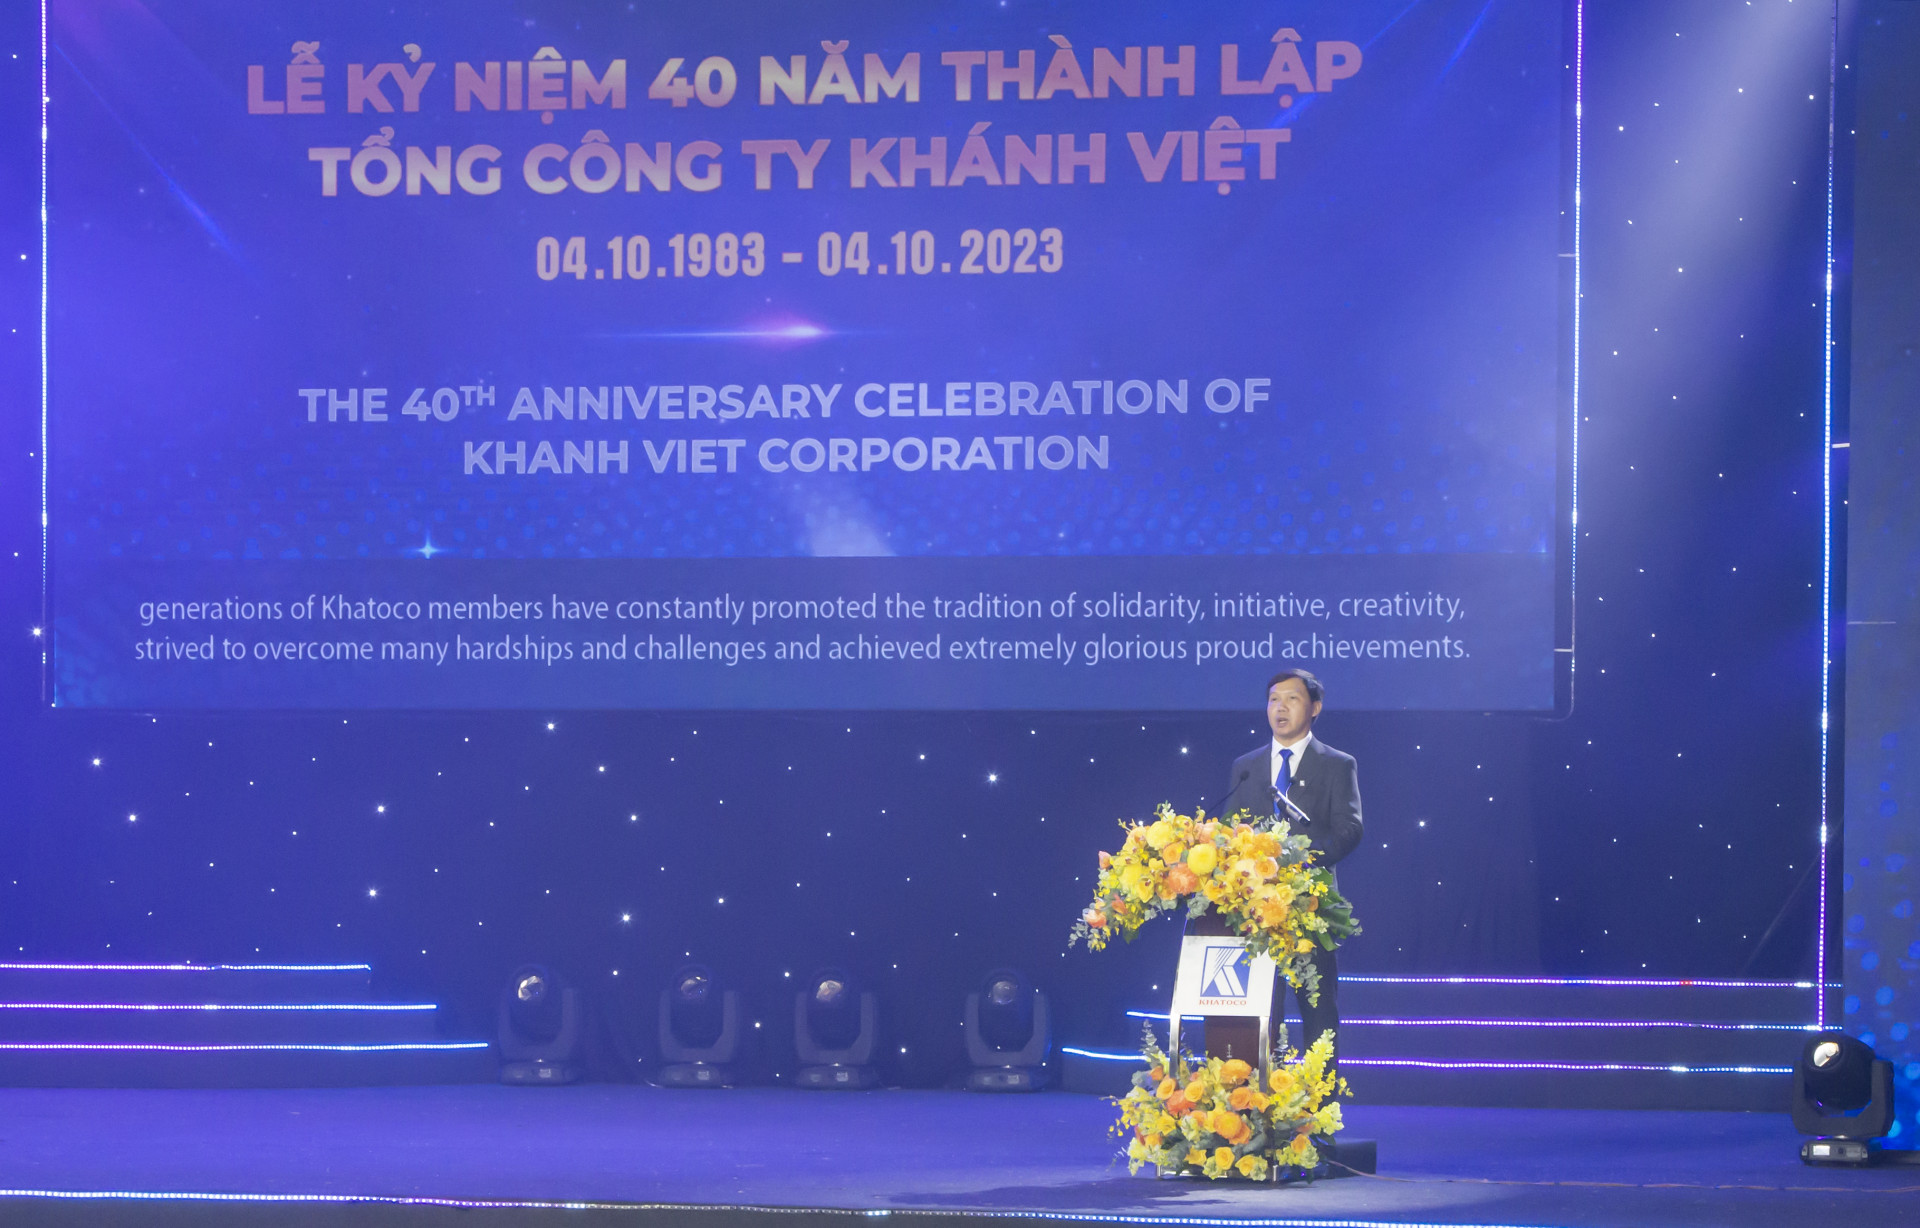 Ông Phan Quang Huy - Tổng Giám đốc Tổng Công ty Khánh Việt phát biểu khai mạc buổi lễ